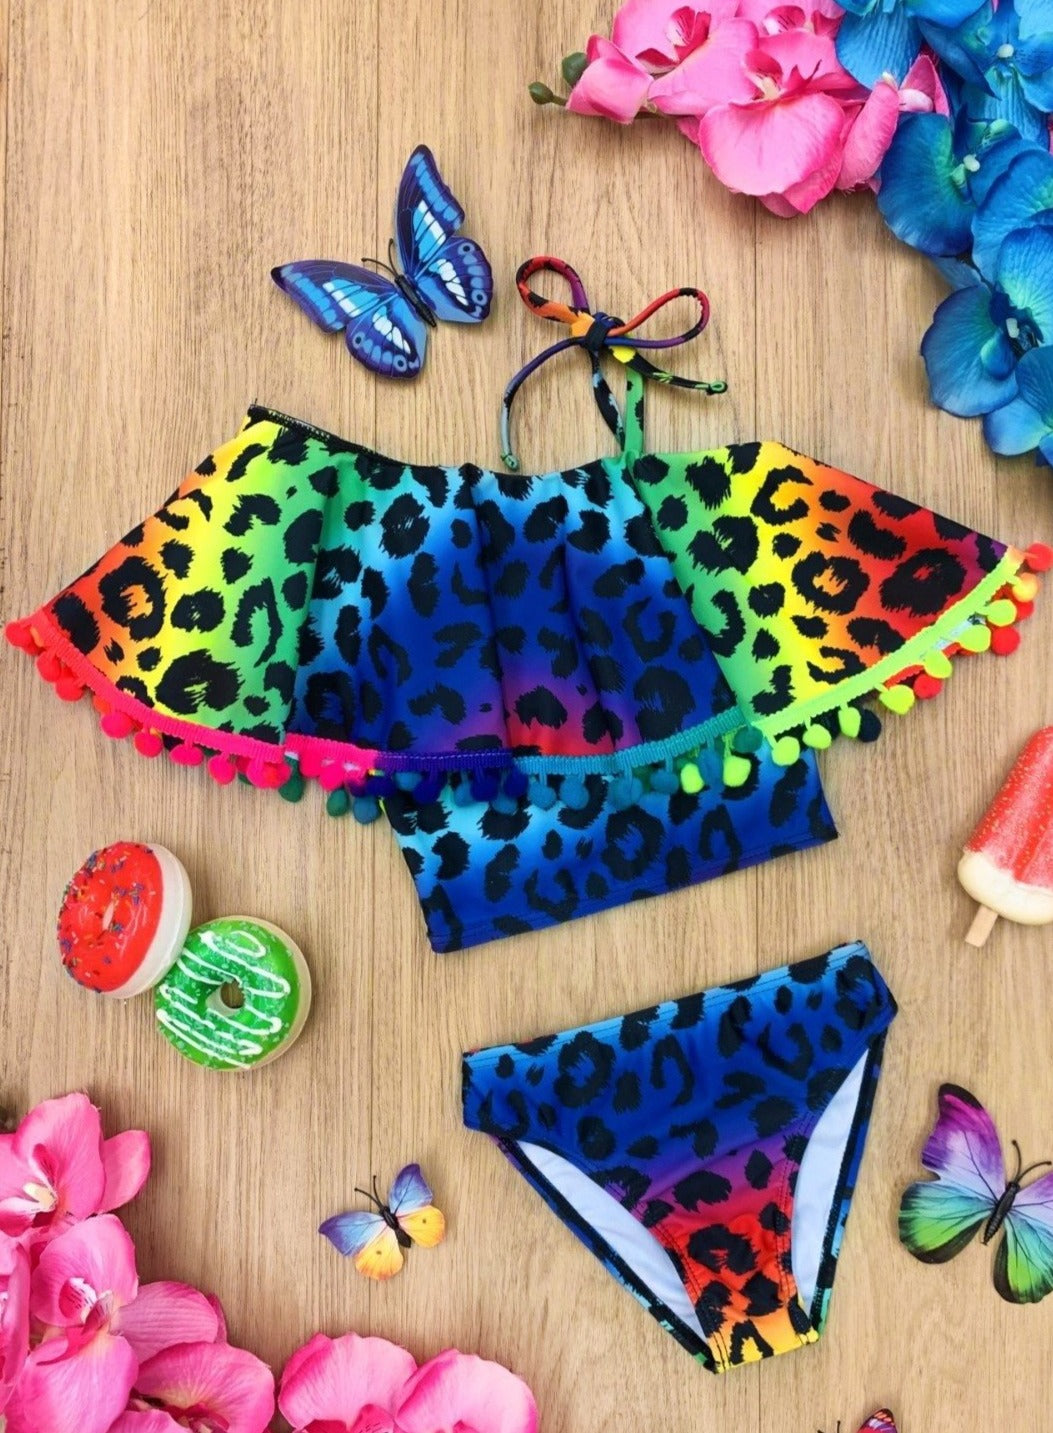 Girls Neon Rainbow Leopard Two Piece Swimsuit | Mia Belle Girls